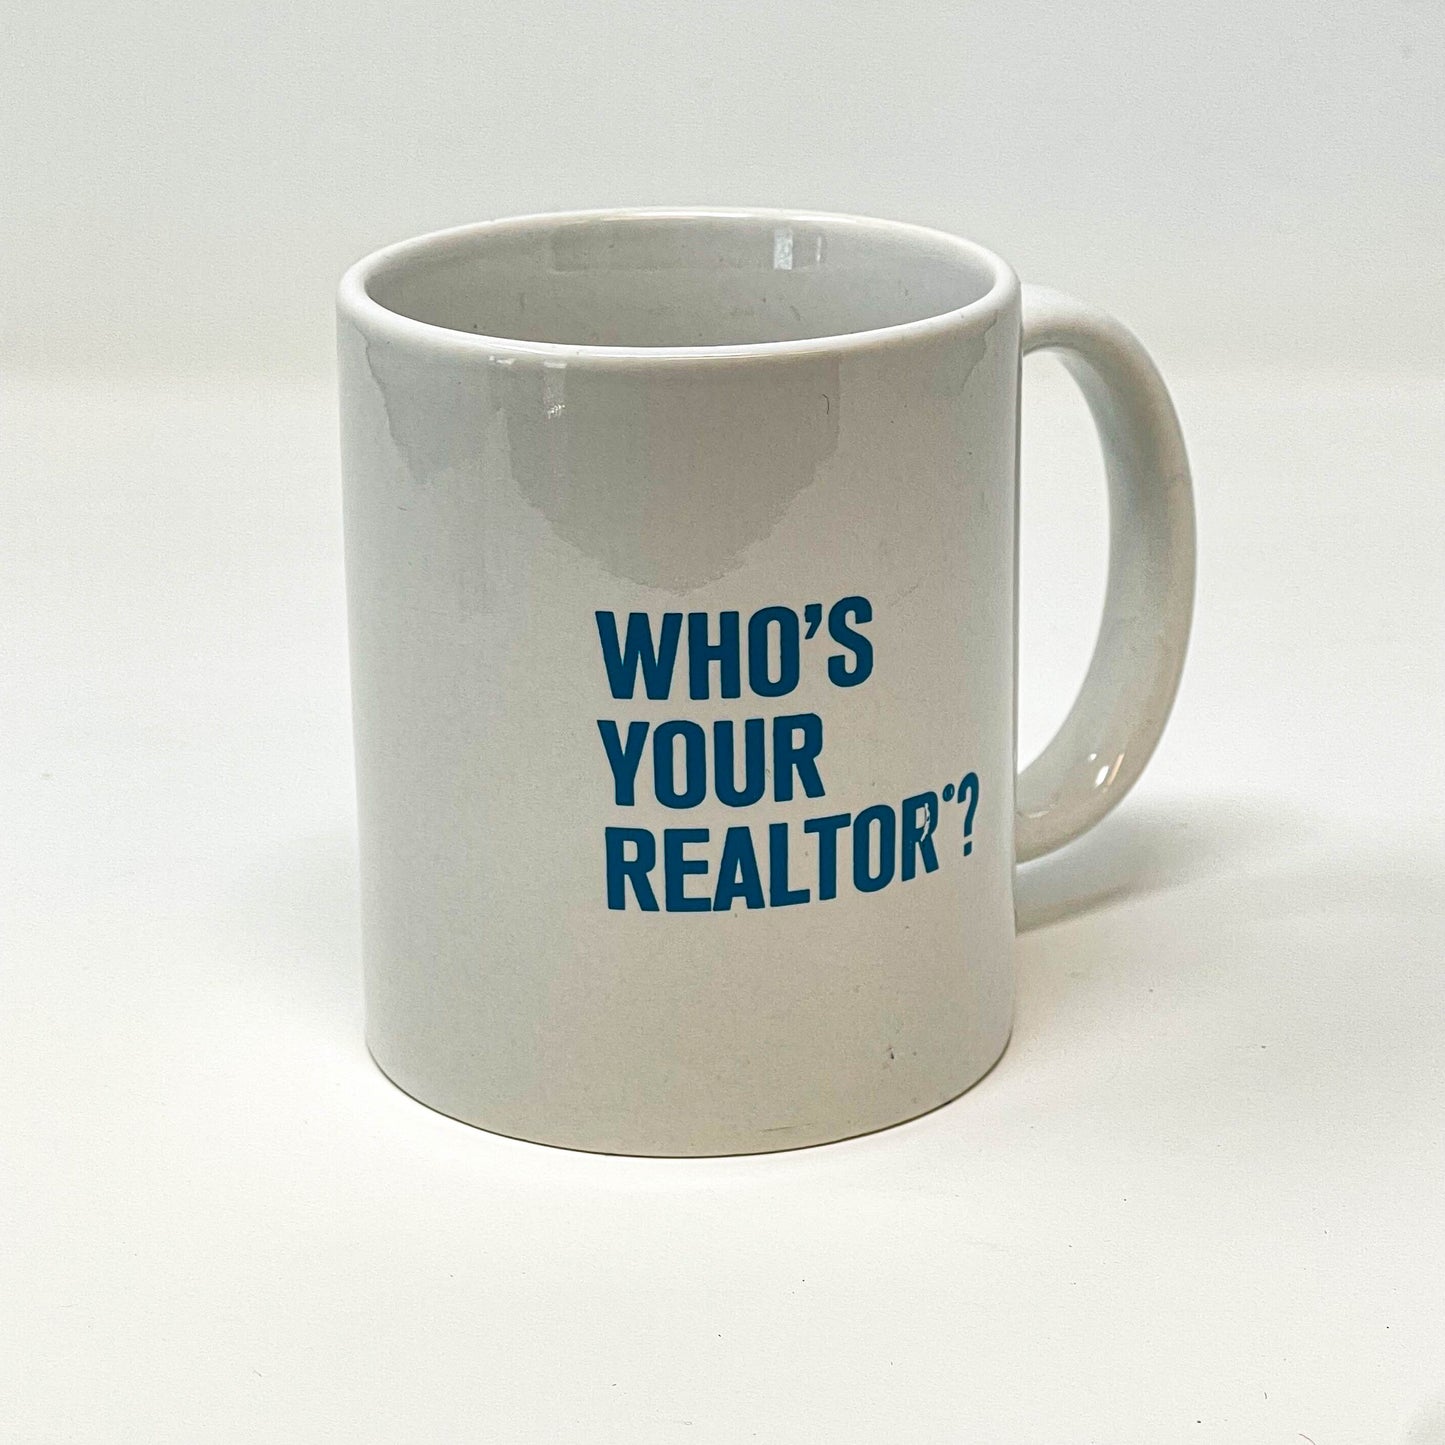 Coffee Cup Mug "Who's Your Realtor" (WHOC)